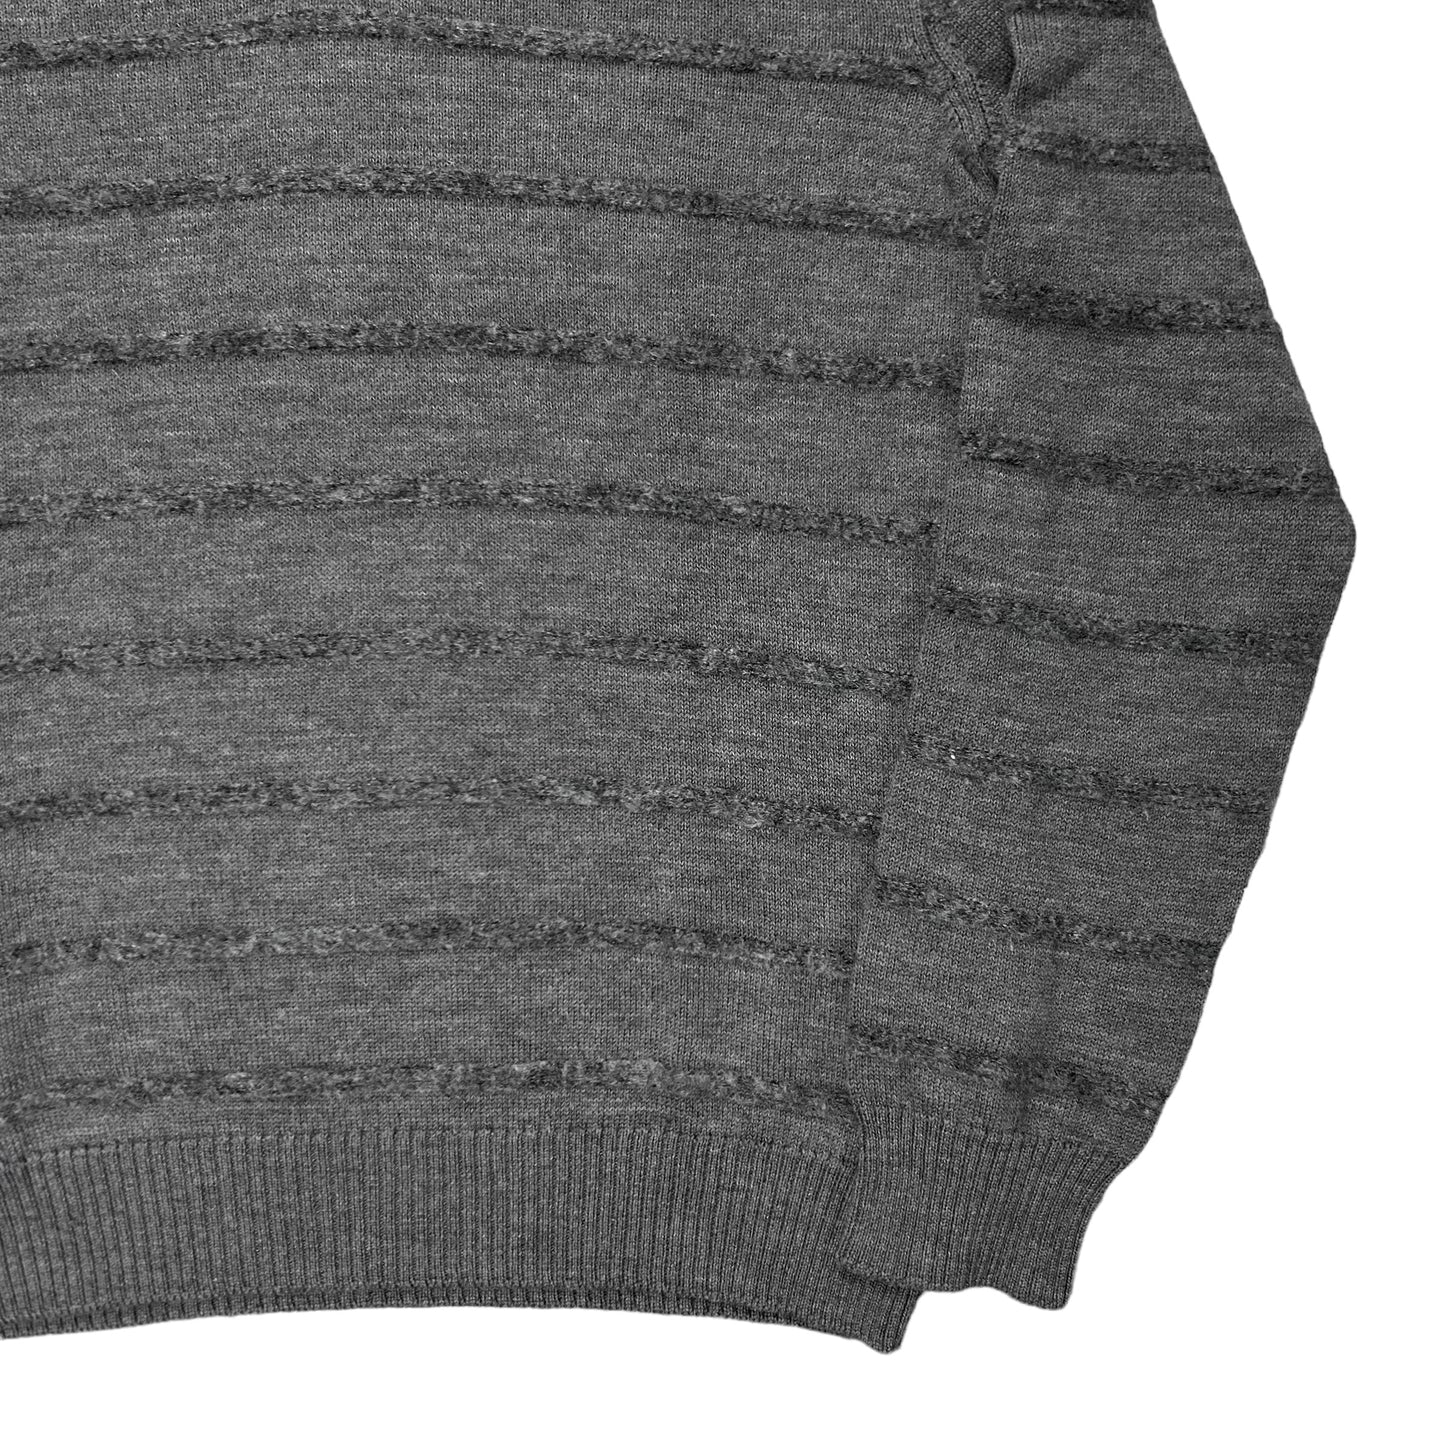 Maison Martin Margiela Mohair Striped V-Neck Sweater